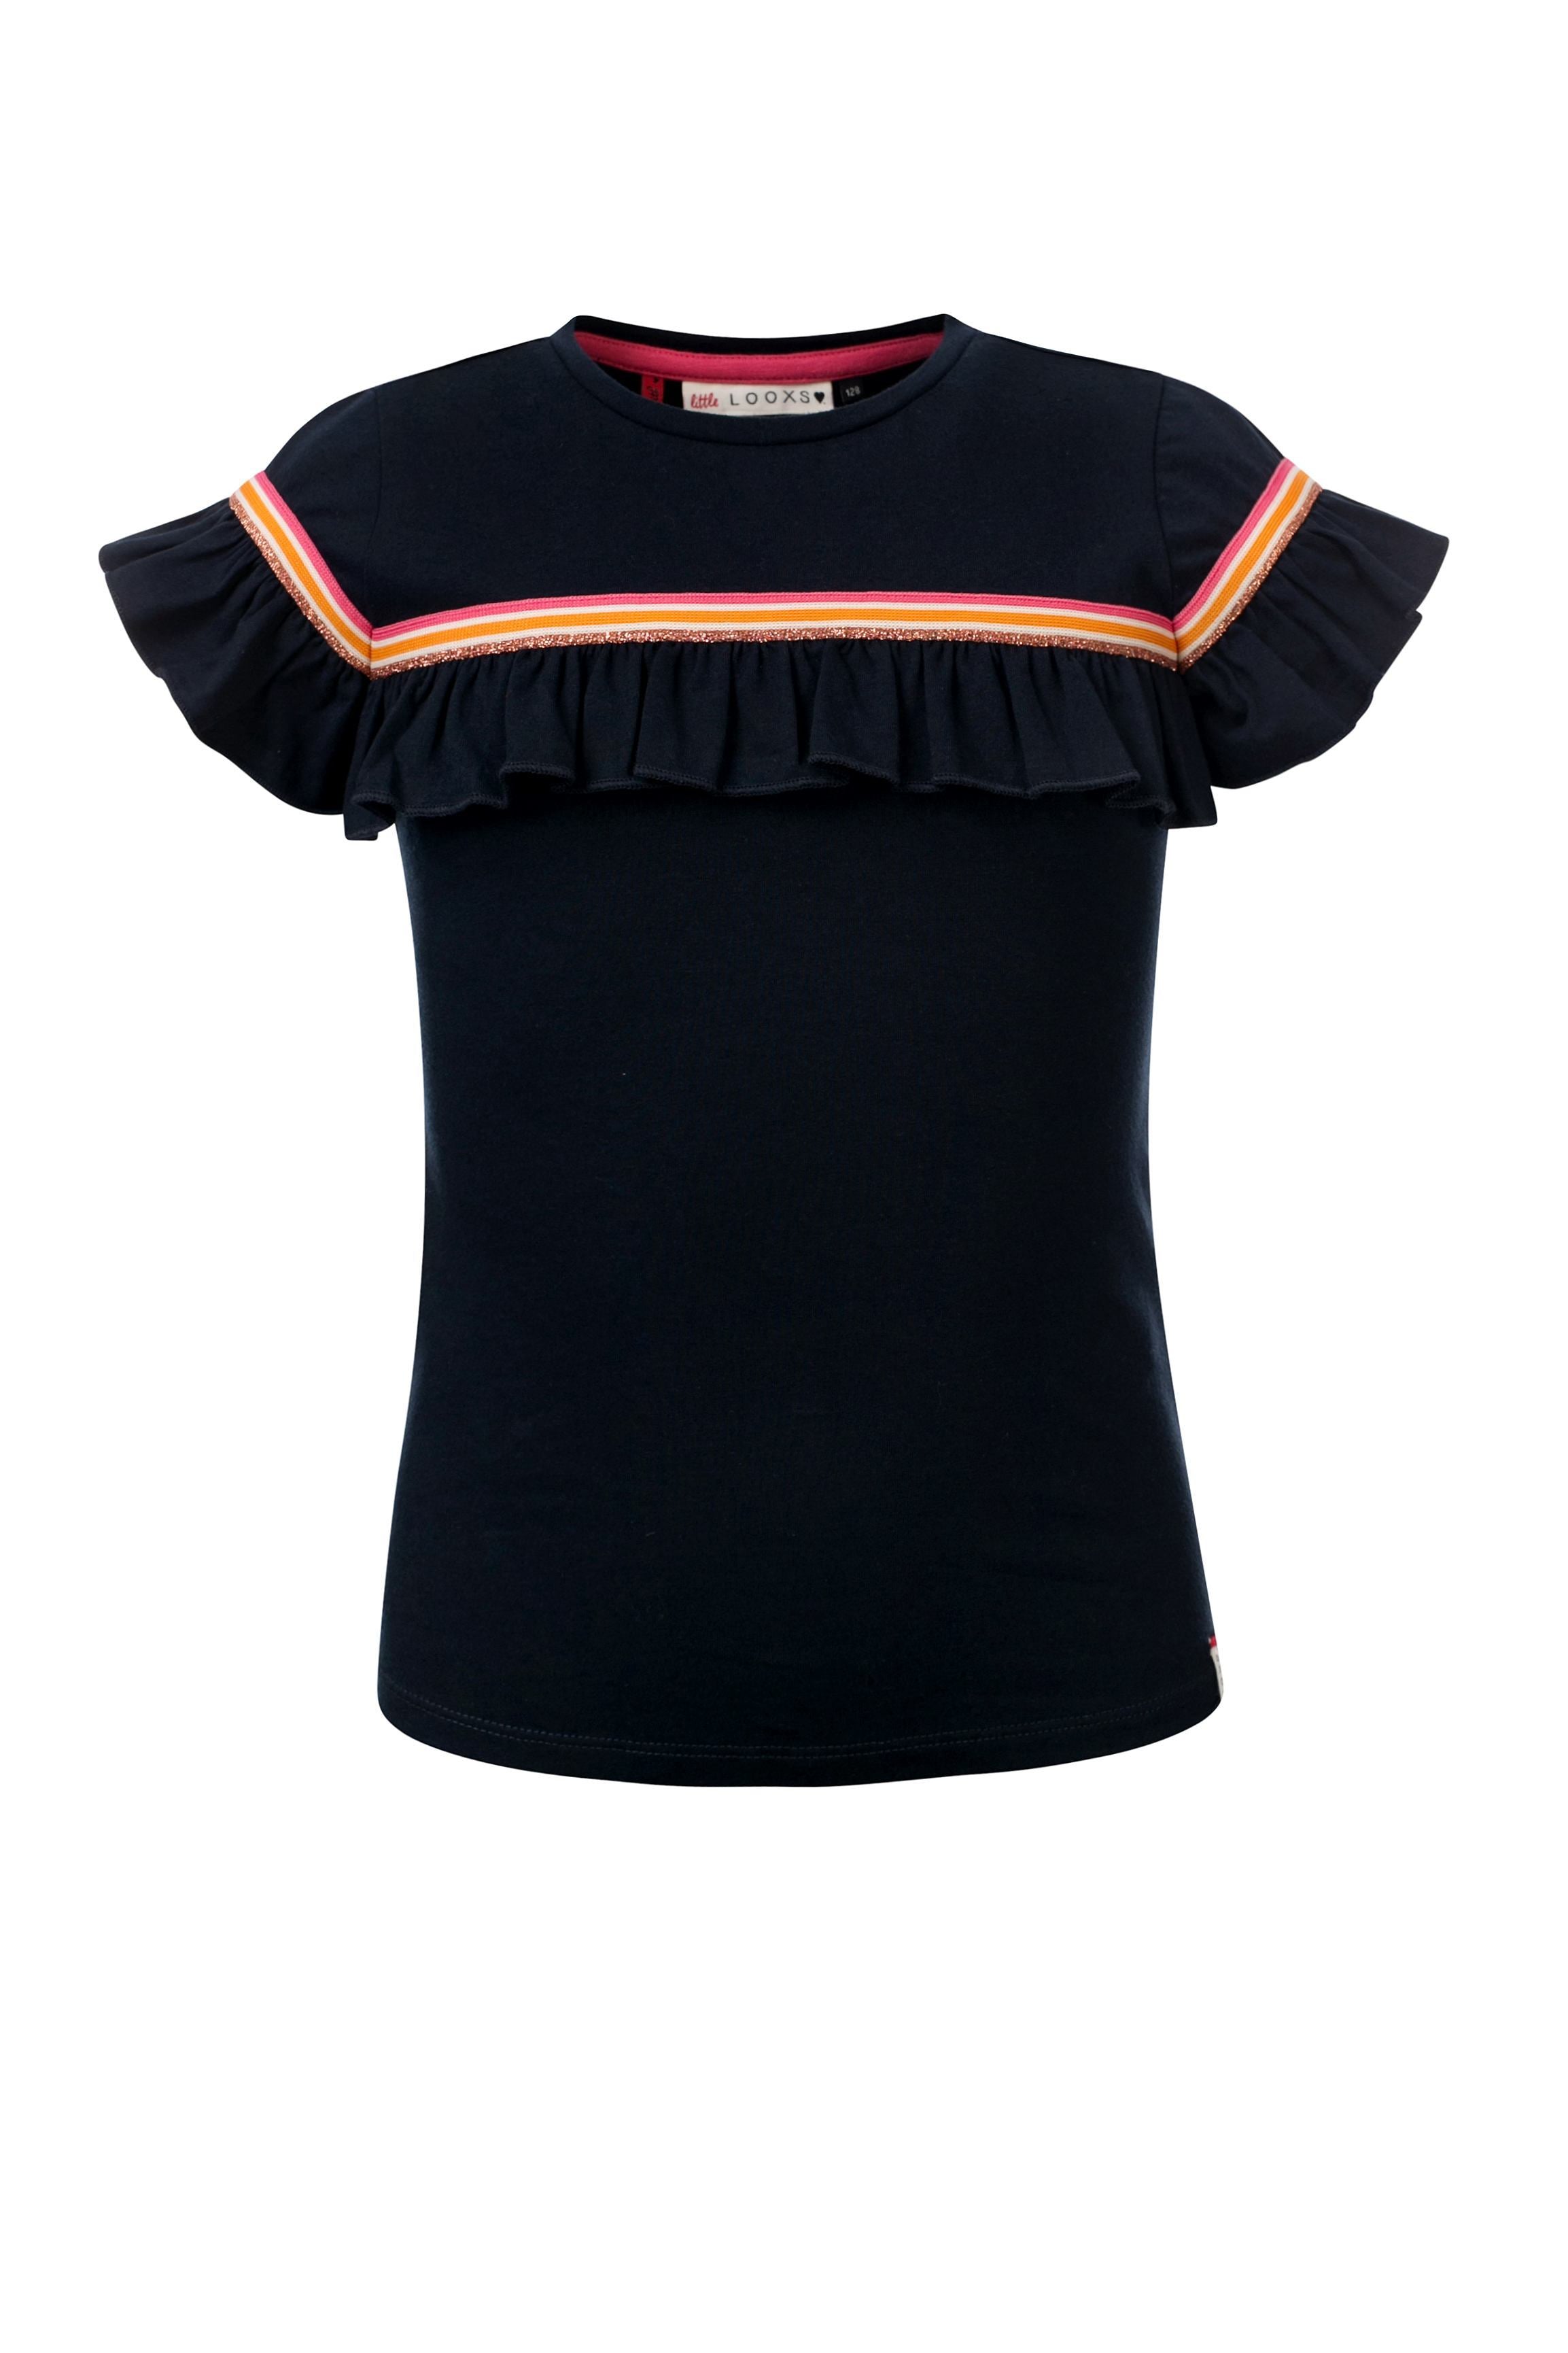 Meisjes T-Shirt Ruffle S. van Little Looxs in de kleur Navy in maat 128.